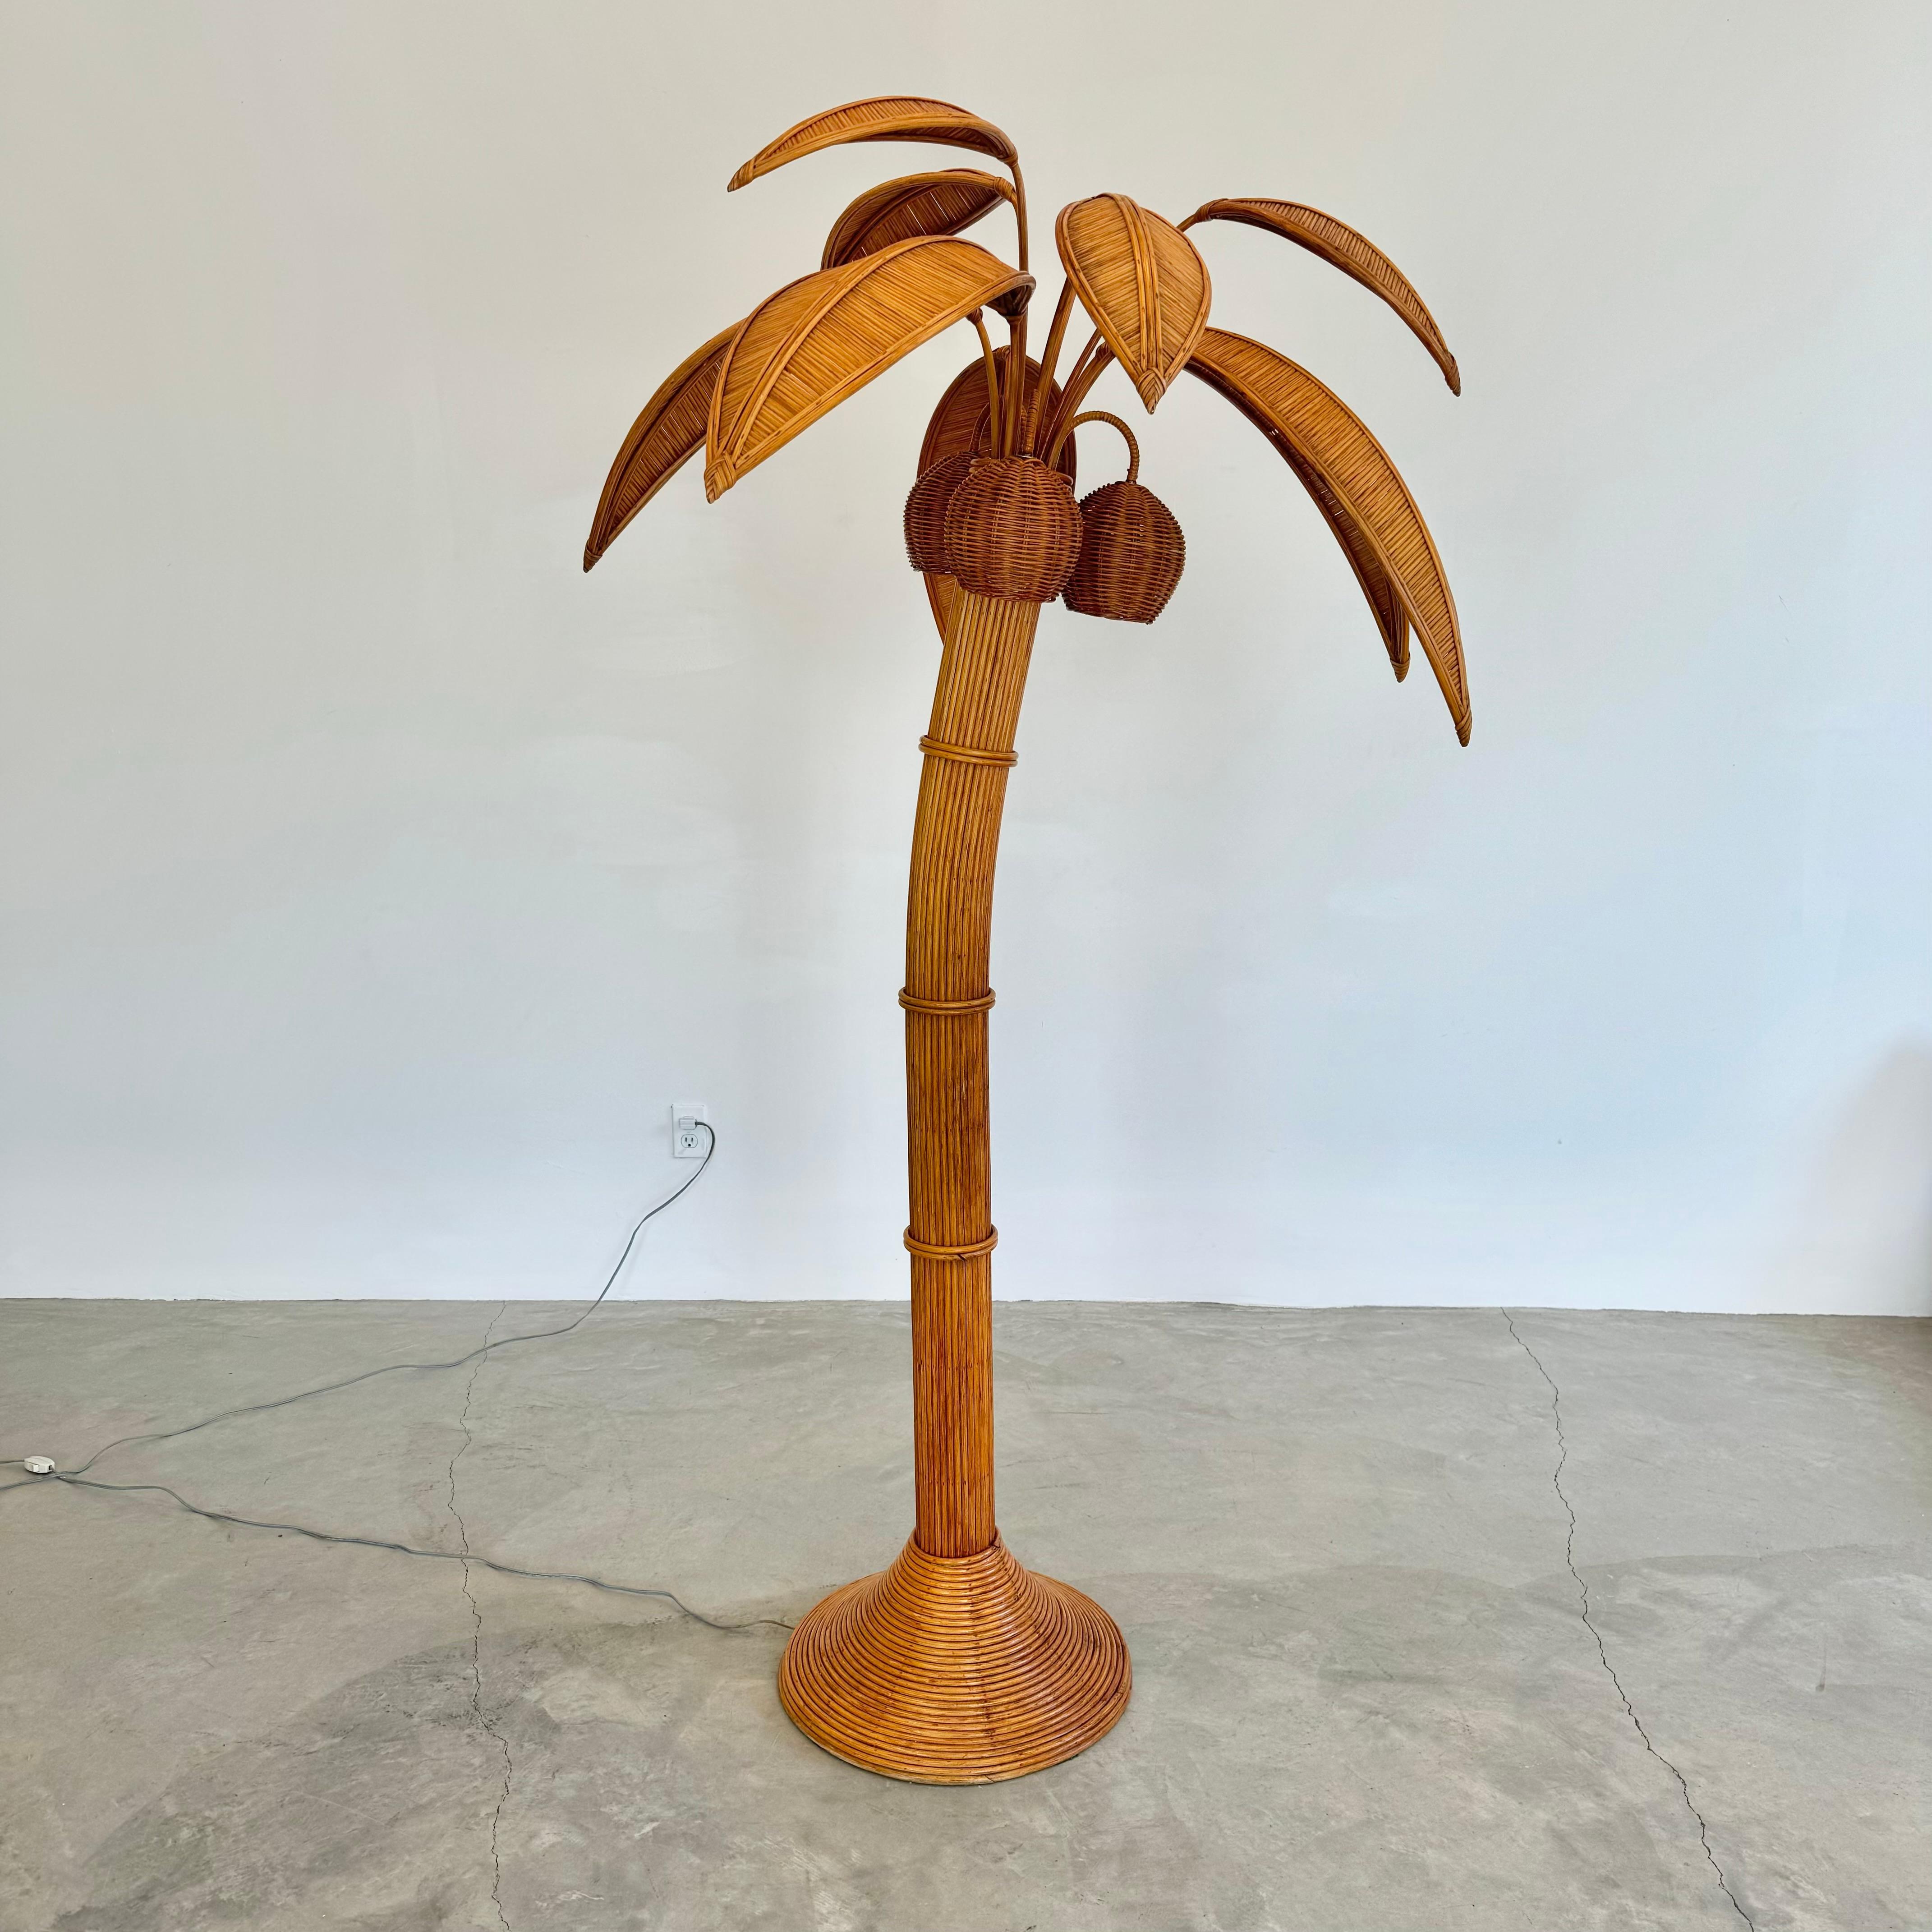 Lampadaire Beachy représentant un palmier. Il mesure un peu moins d'un mètre quatre-vingt-dix. Fabriqué en rotin et en osier. Trois noix de coco en osier contiennent chacune une douille/lumière à l'intérieur. Les noix de coco pivotent. Des feuilles